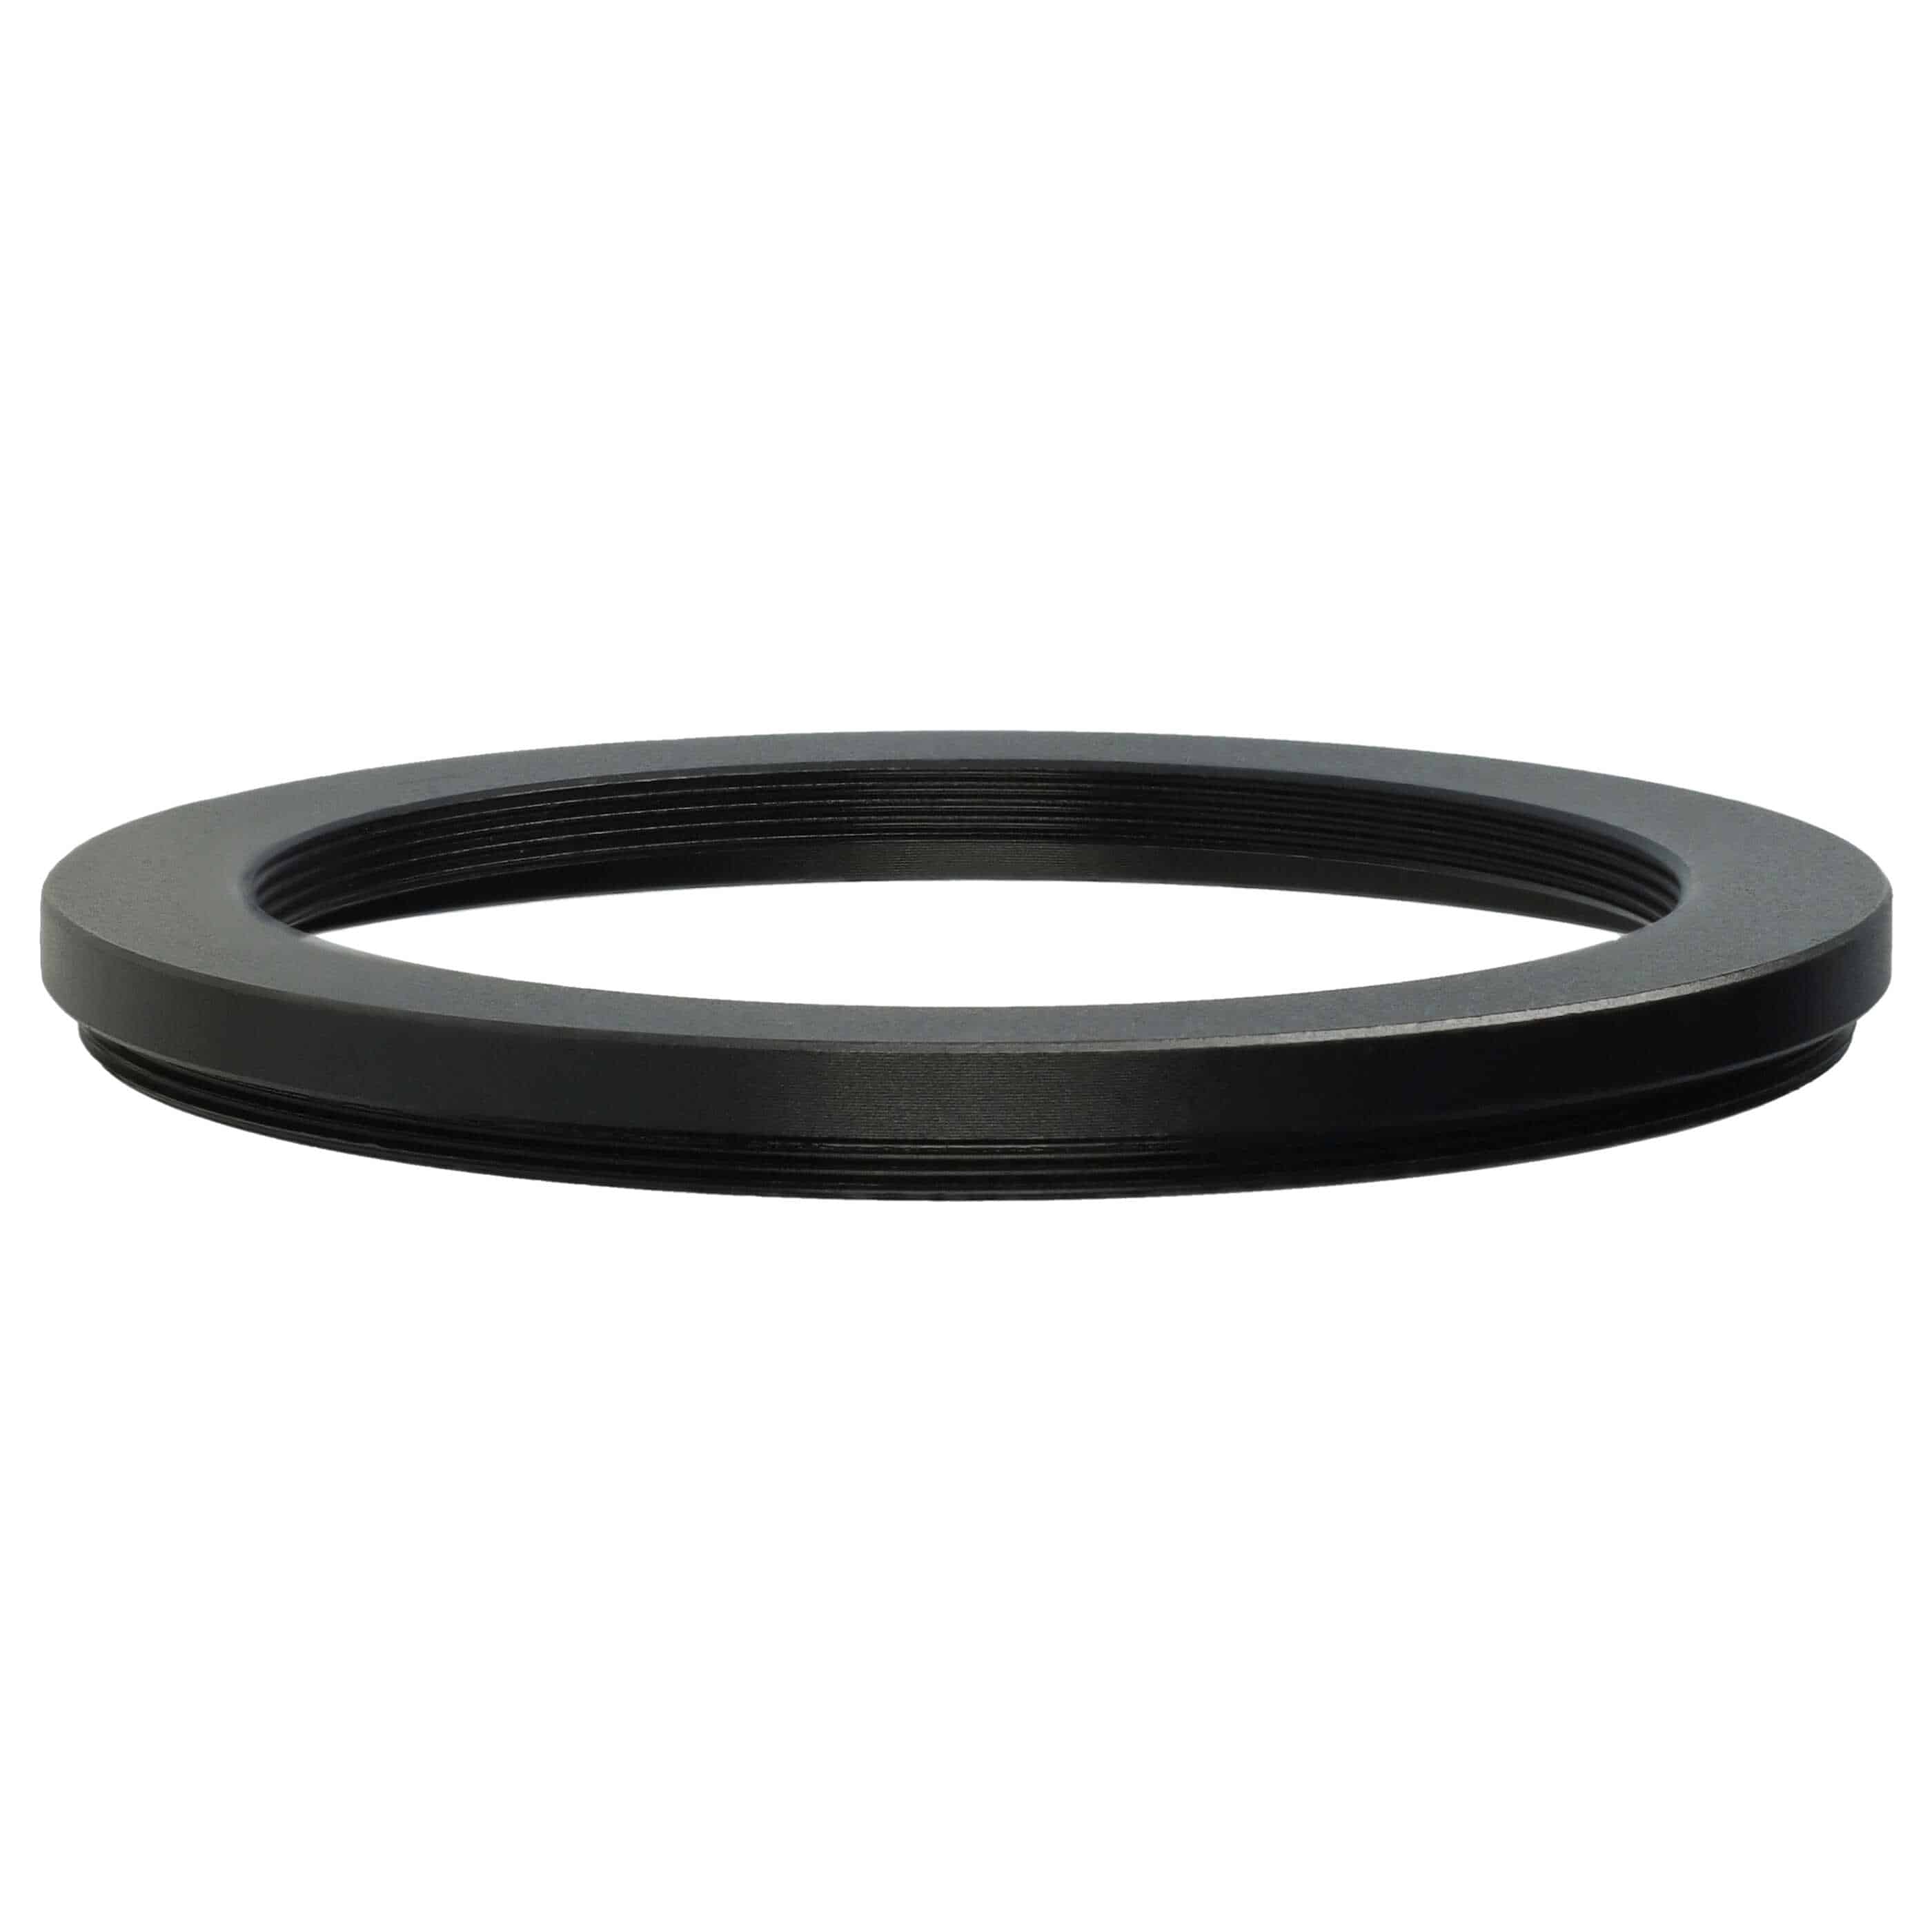 Step-Down-Ring Adapter von 72 mm auf 58 mm für diverse Kamera Objektive